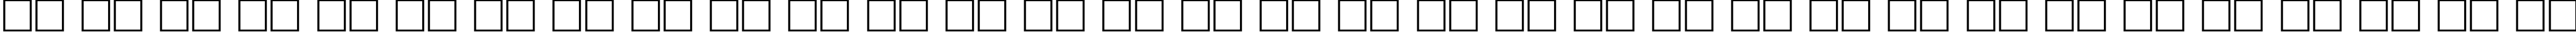 Пример написания русского алфавита шрифтом Becker